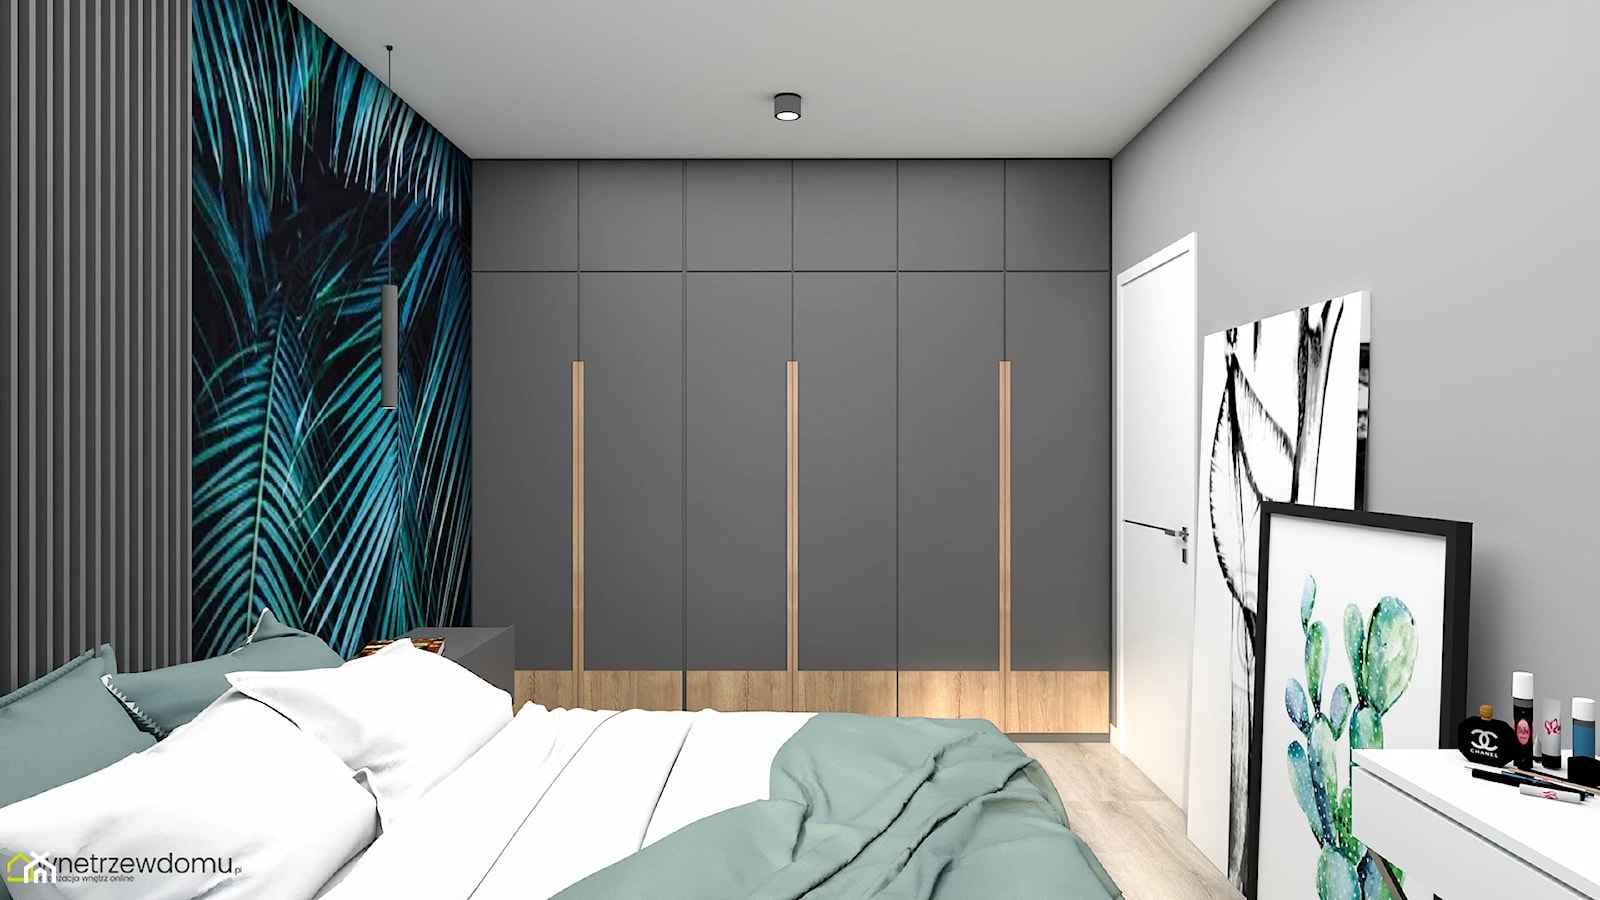 Nowoczesna sypialnia w ciemnych kolorach - zdjęcie od wnetrzewdomu - Homebook